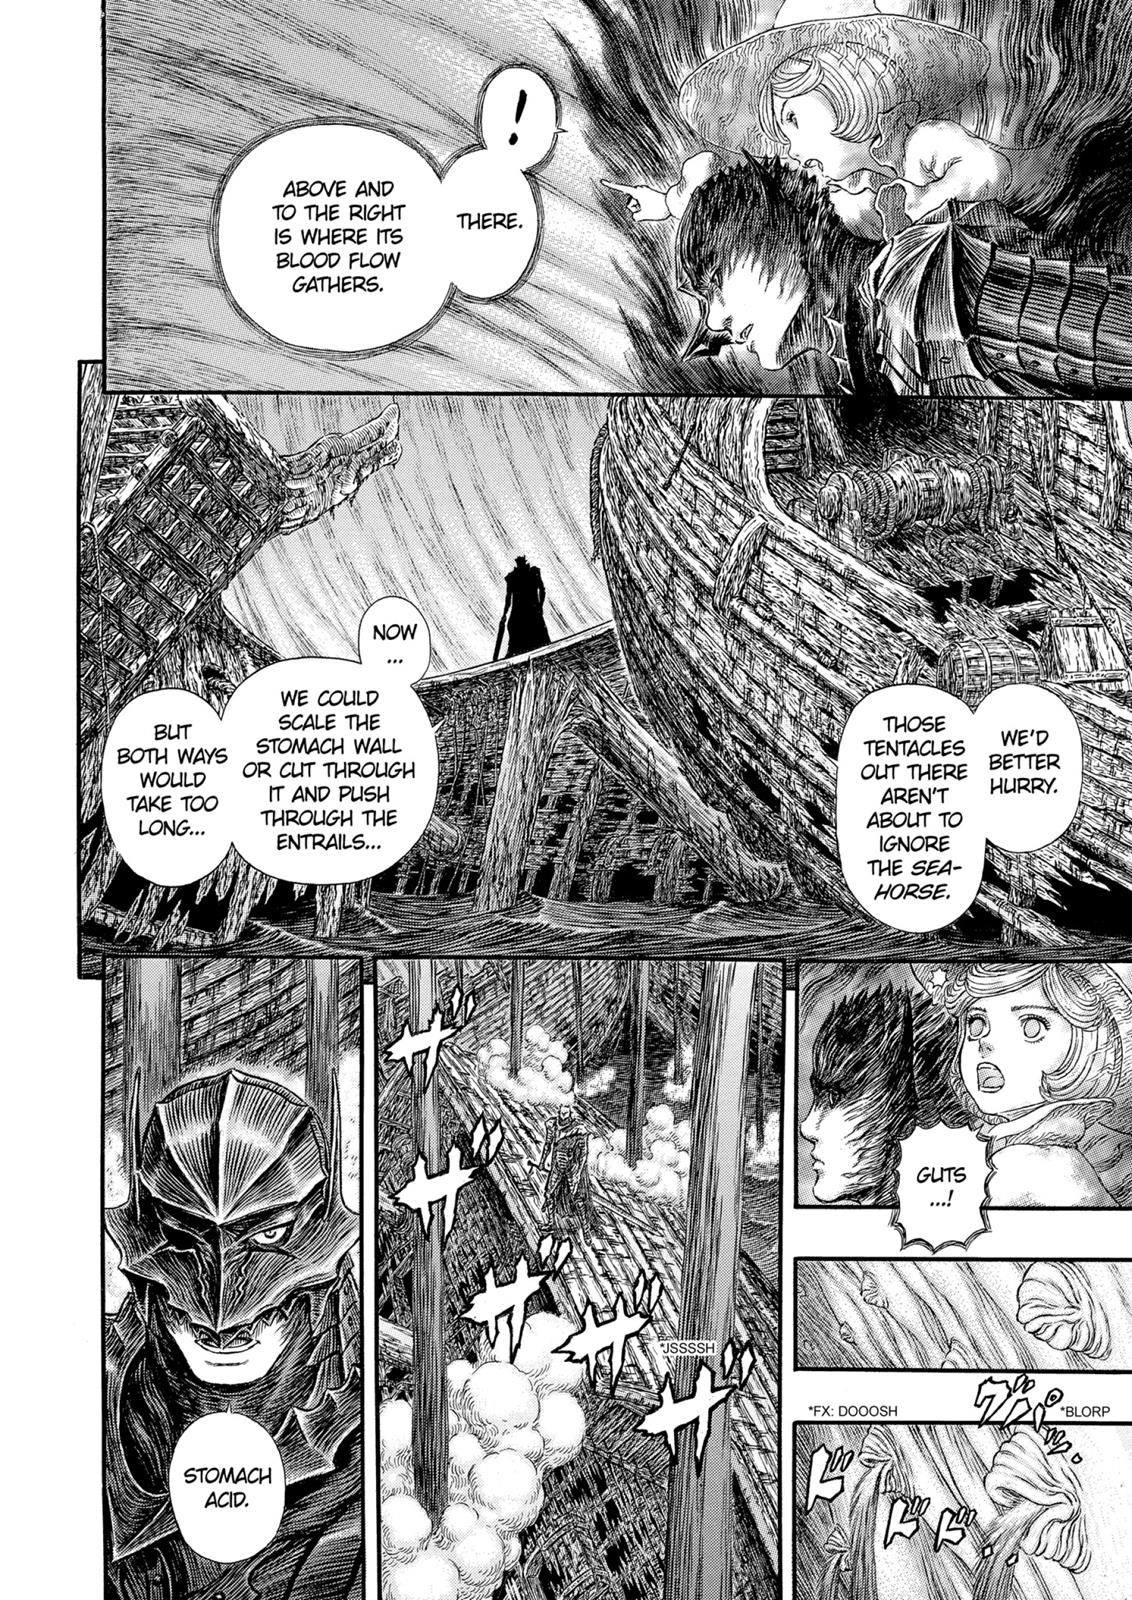 Berserk Manga Chapter 320 image 11